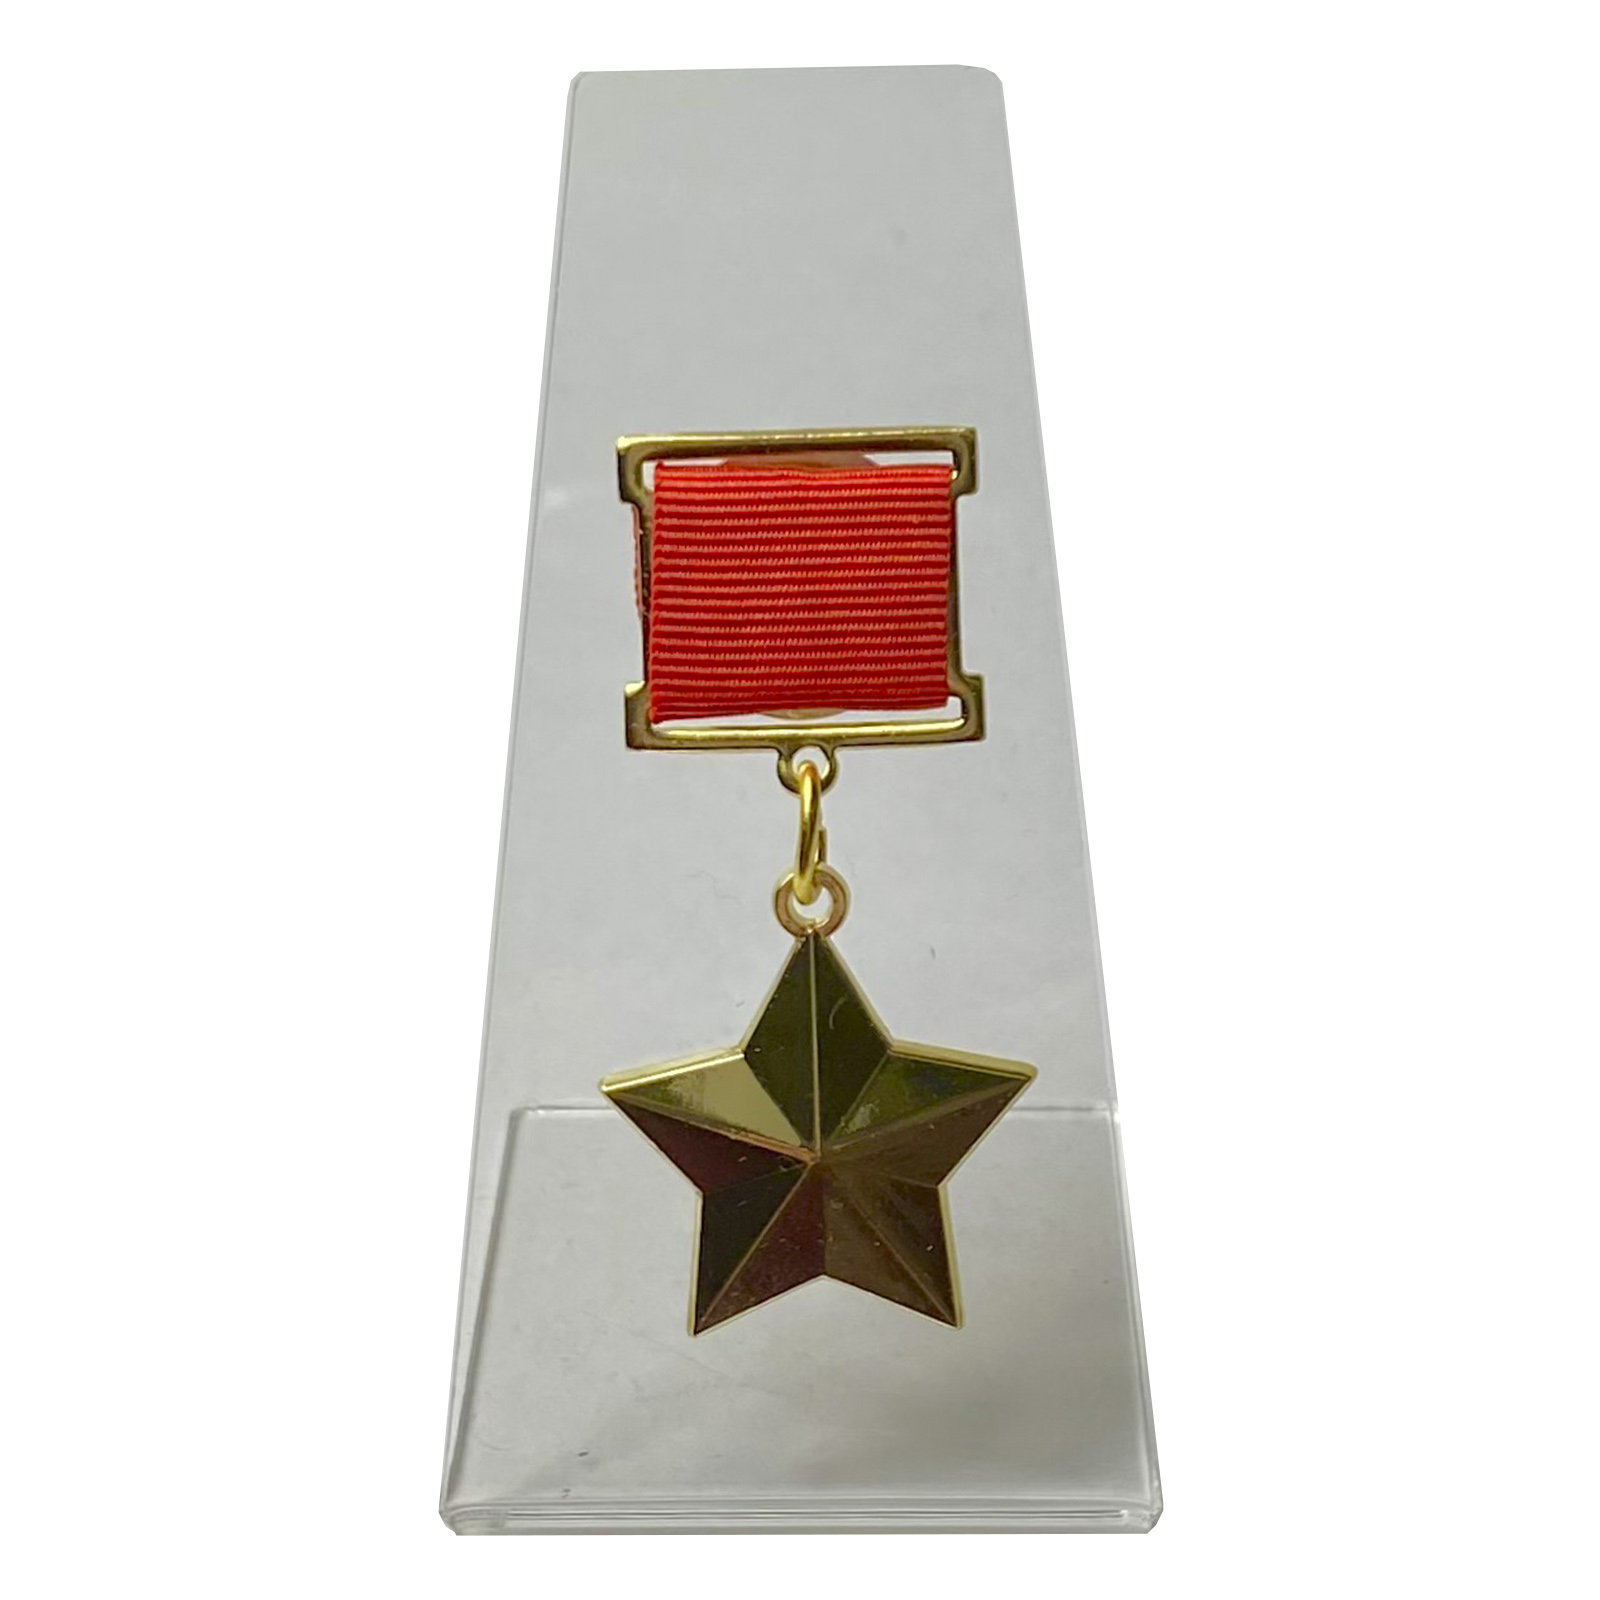 Муляж звезды Героя Советского Союза на подставке